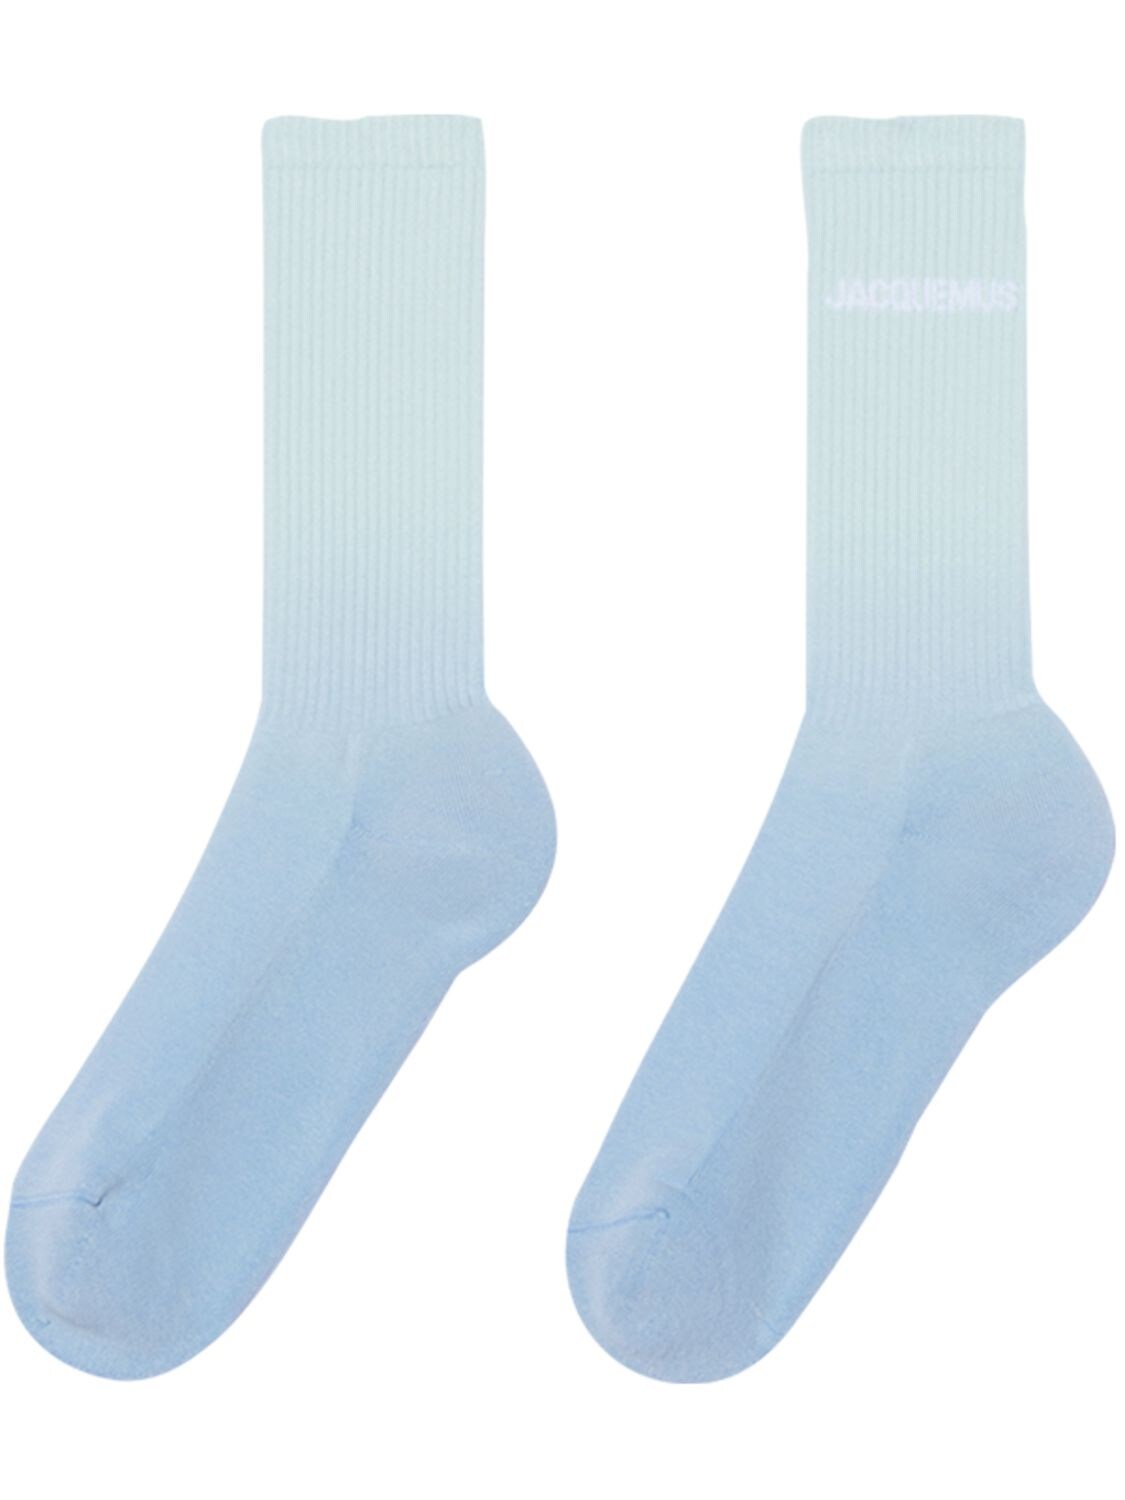 Les Chaussettes Moisson Cotton Socks